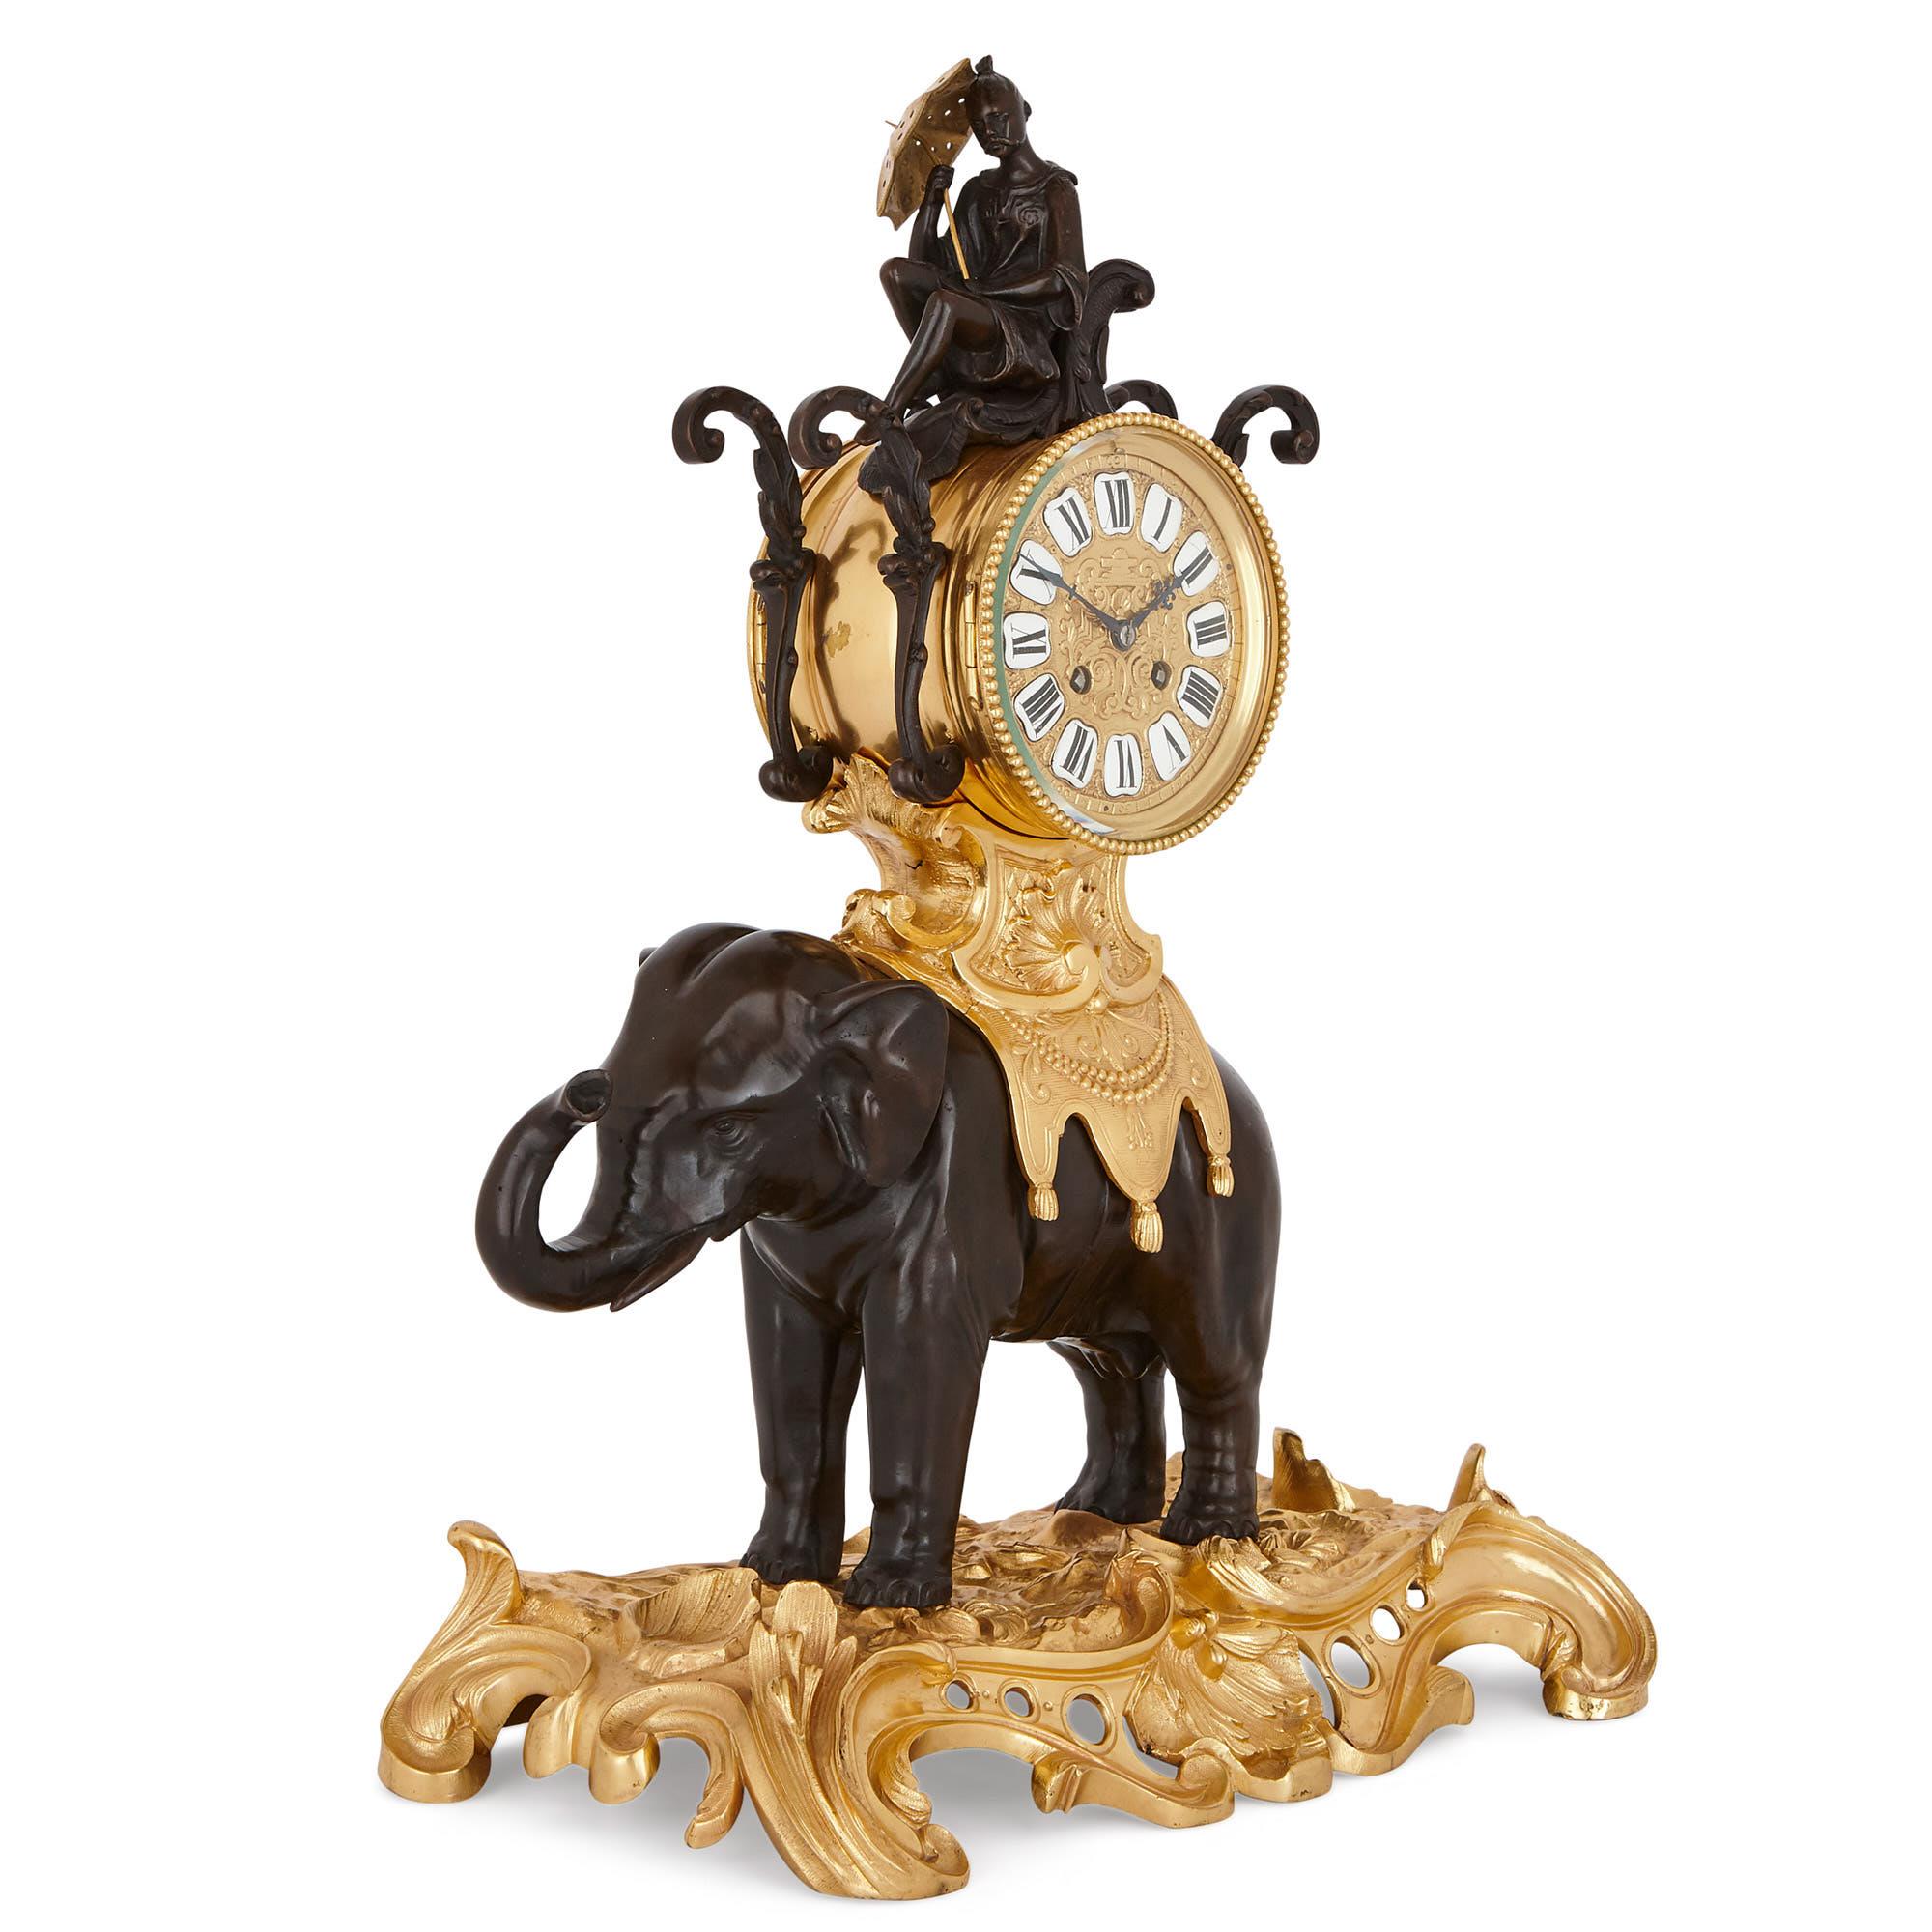 Diese schöne Kaminsimsuhr im fantasievollen Louis XV-Stil hat die Form eines asiatischen Elefanten, der auf einer Kutsche sitzt. Die Uhr zeigt die patinierte Skulptur eines chinesischen Mannes, der auf einem Stuhl sitzt und ein vergoldetes